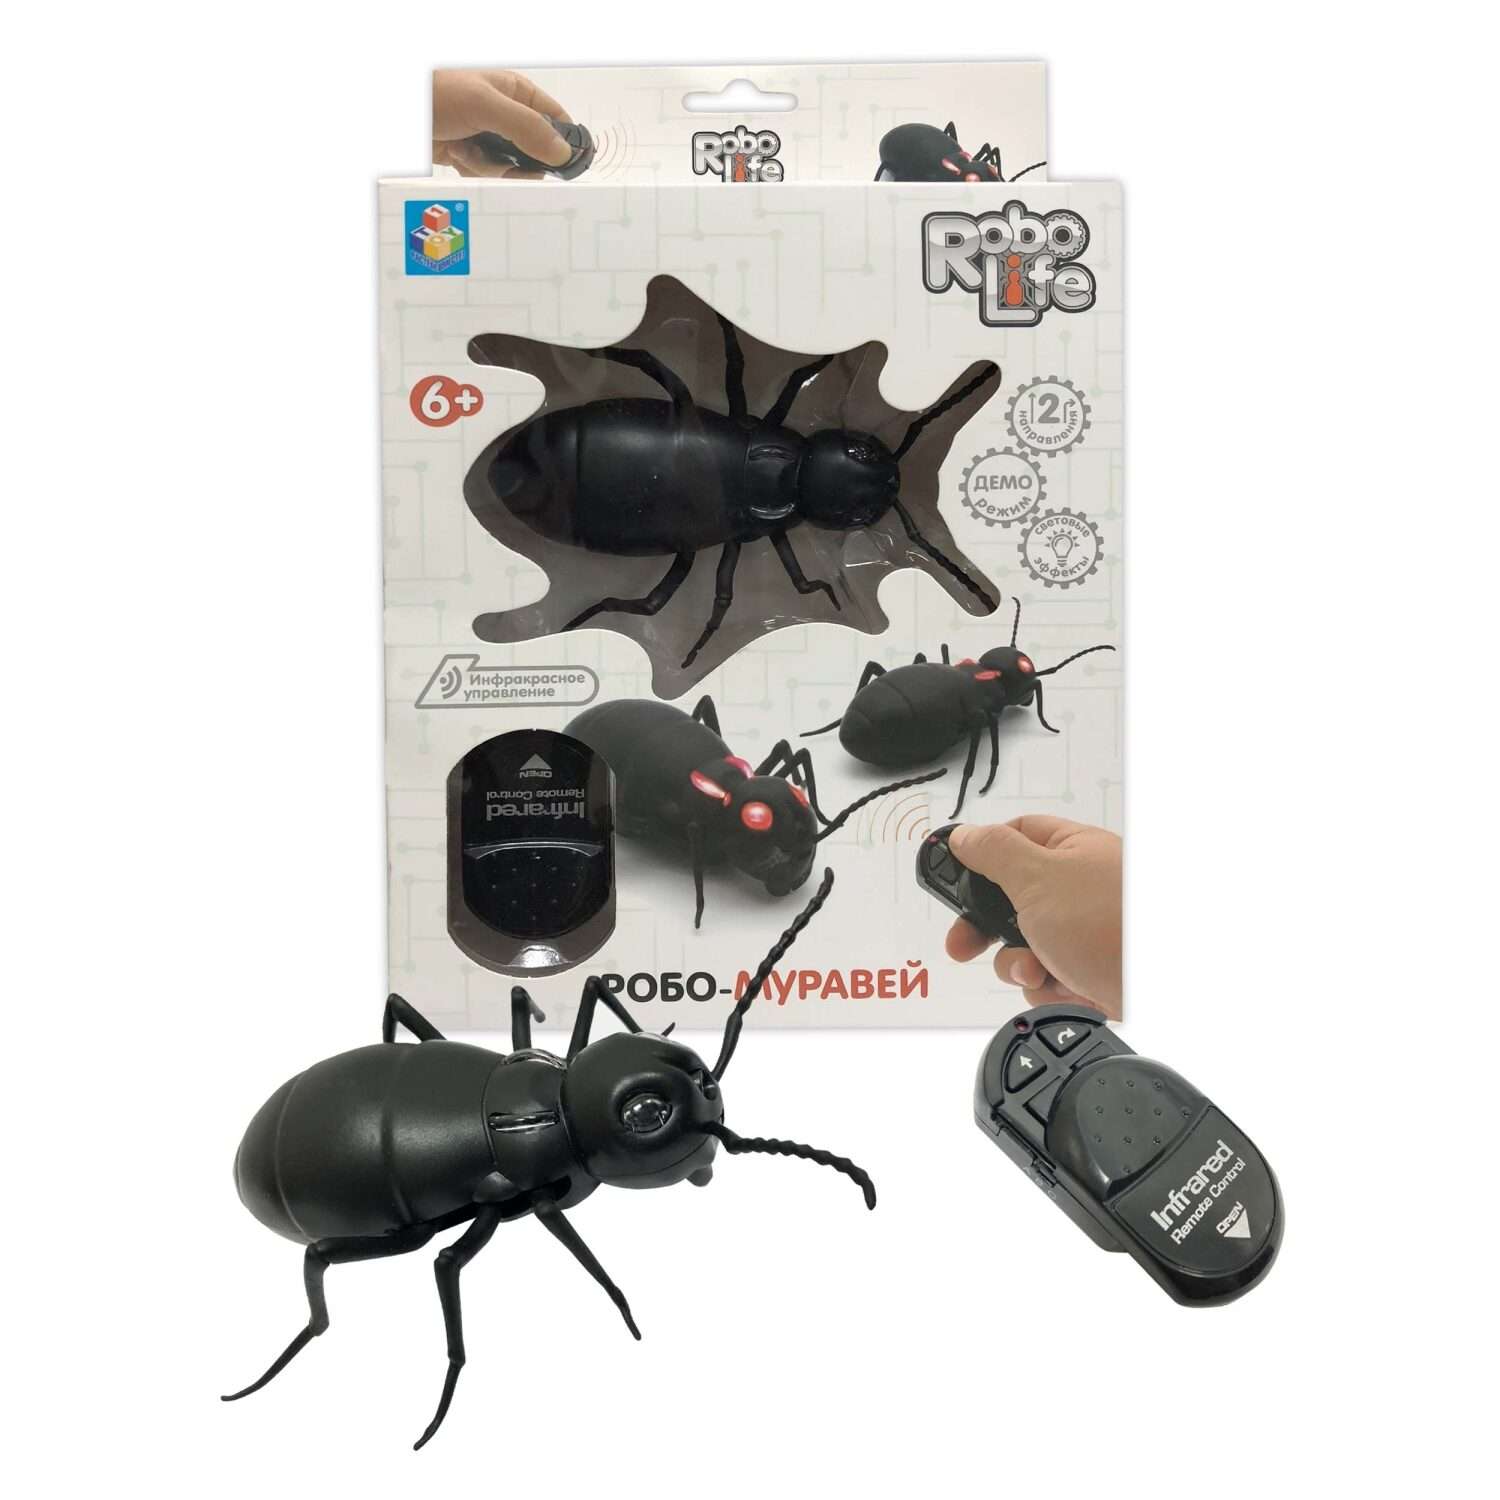 Интерактивная игрушка Robo Life Робо-муравей на ИК управлении со световыми эффектами - фото 6